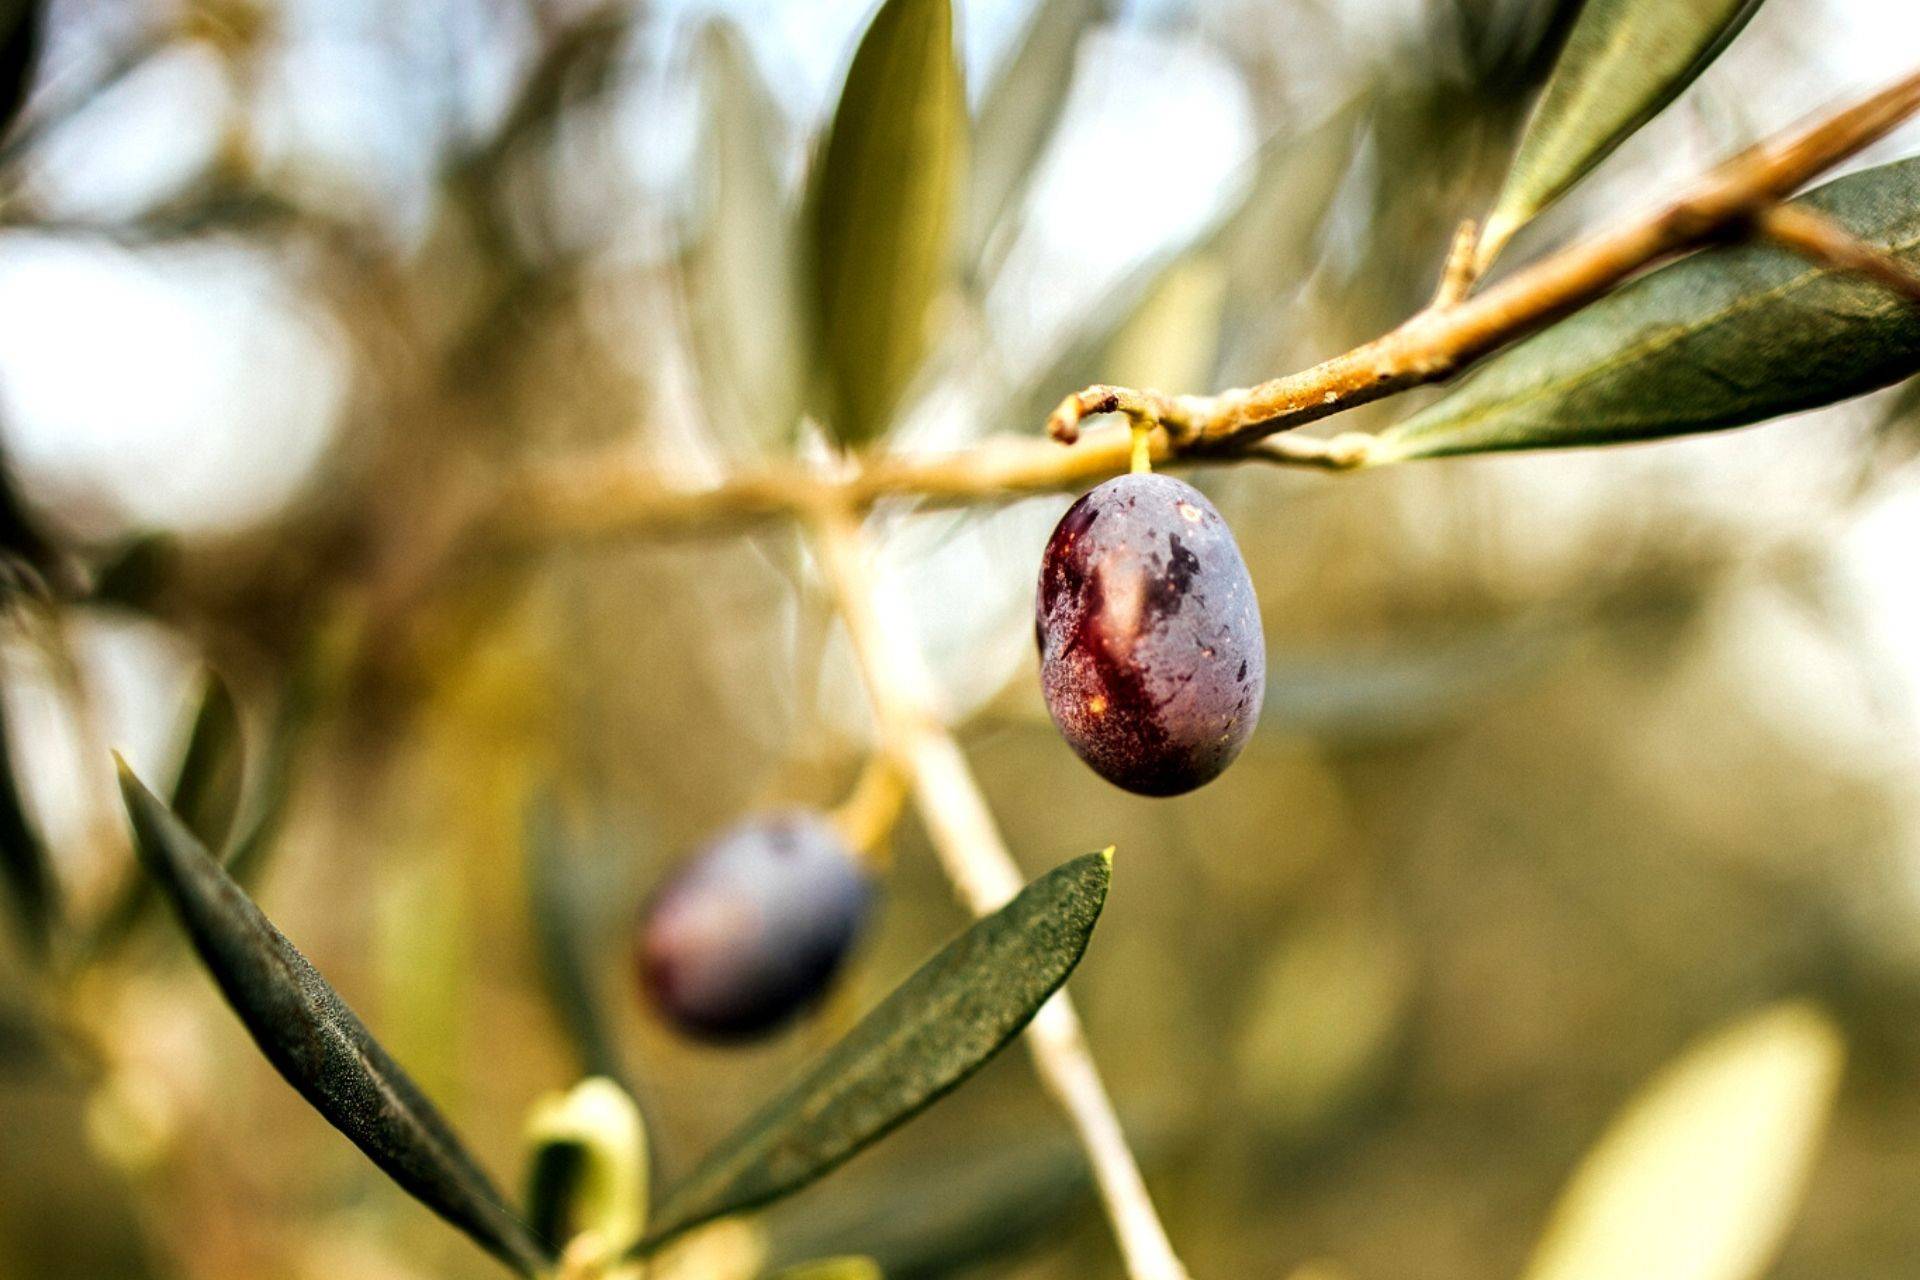 Valdichiana Aretina's olives